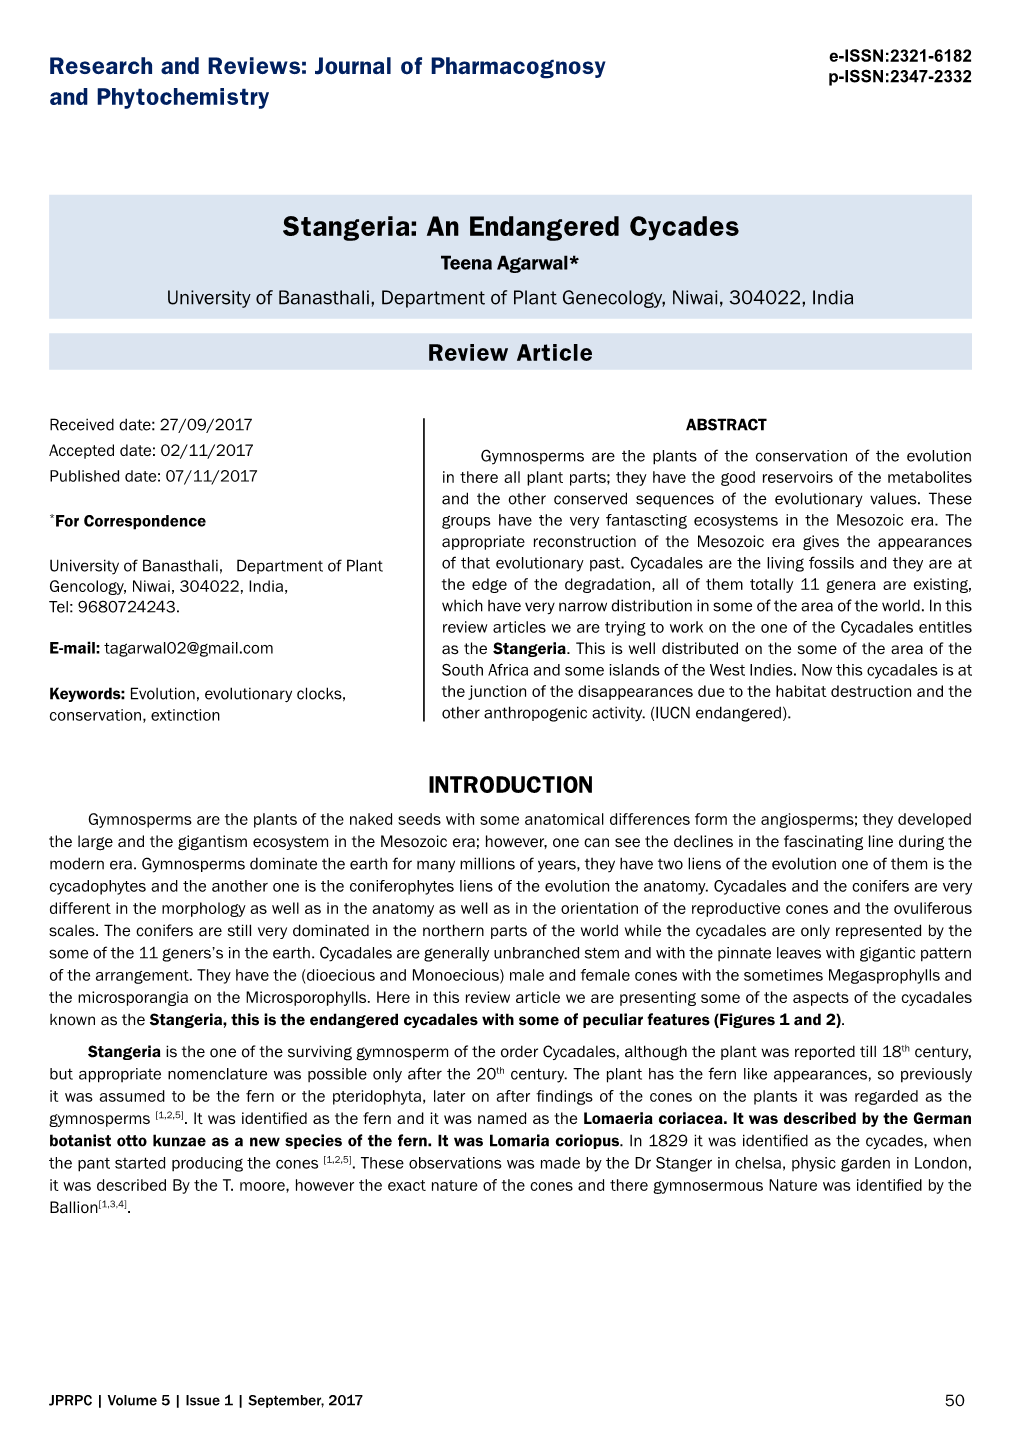 Stangeria: an Endangered Cycades Teena Agarwal* University of Banasthali, Department of Plant Genecology, Niwai, 304022, India